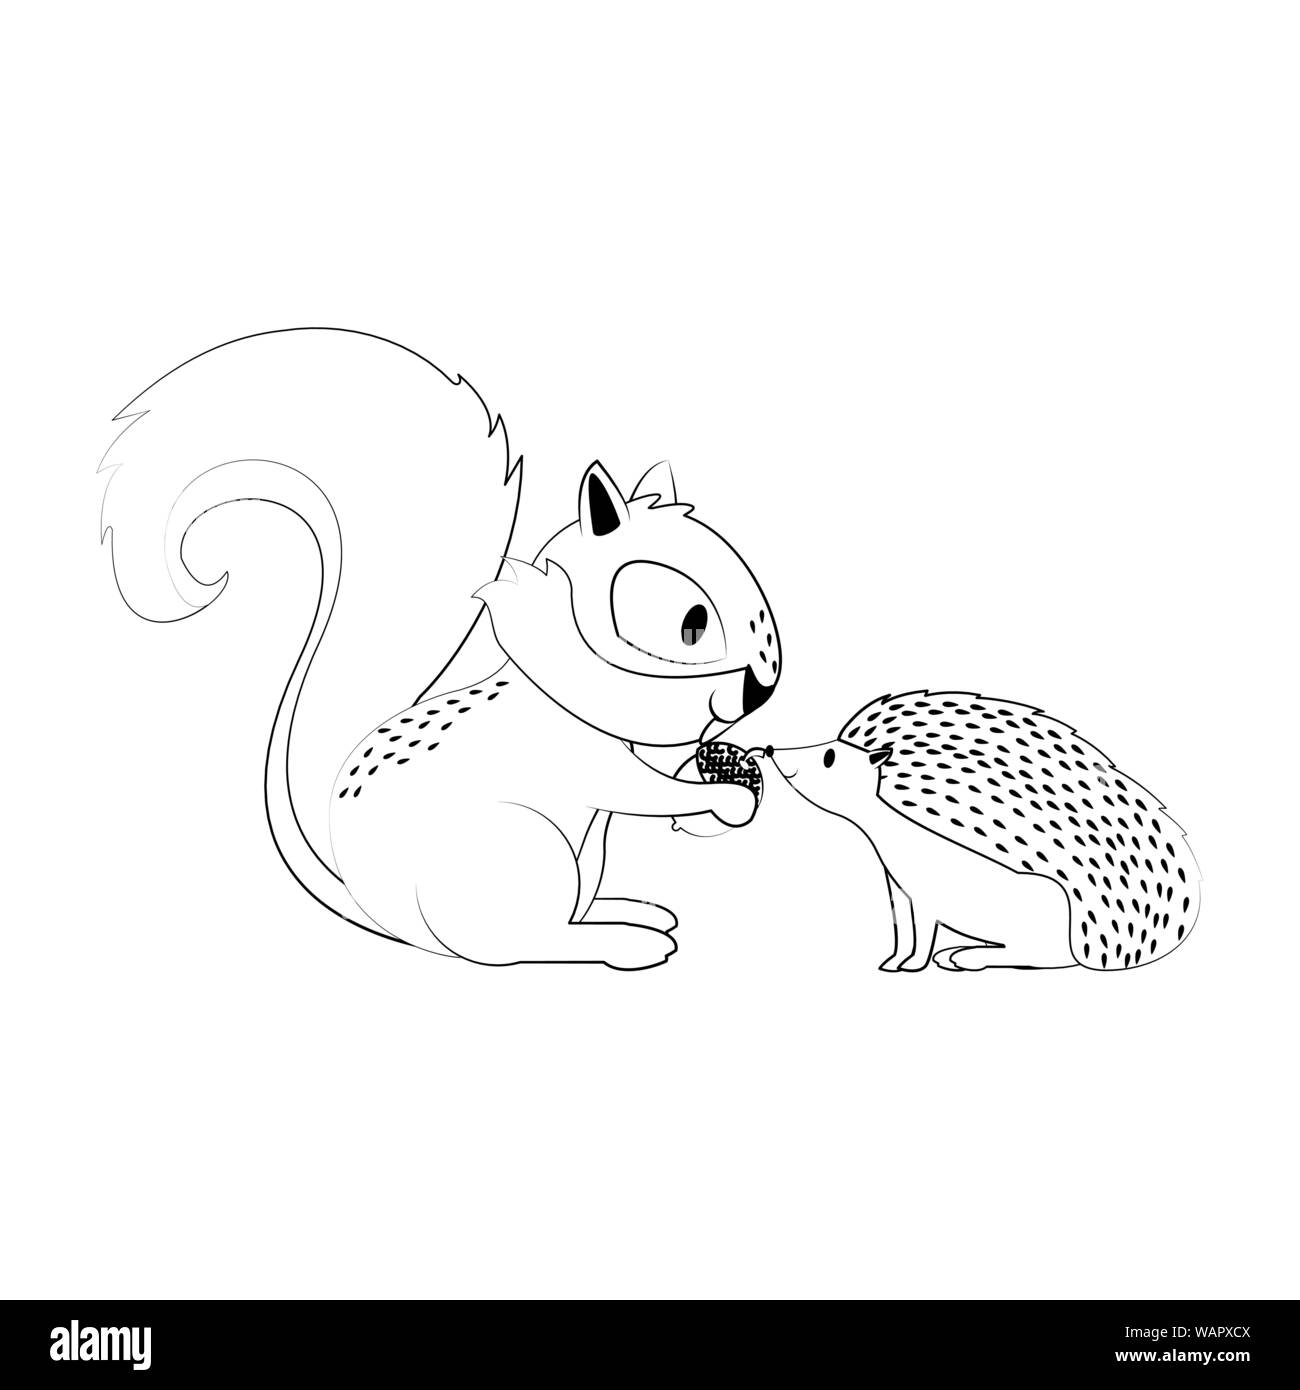 Eichhörnchen und Igel mit Mutter Karikatur in Schwarz und Weiß Stock Vektor